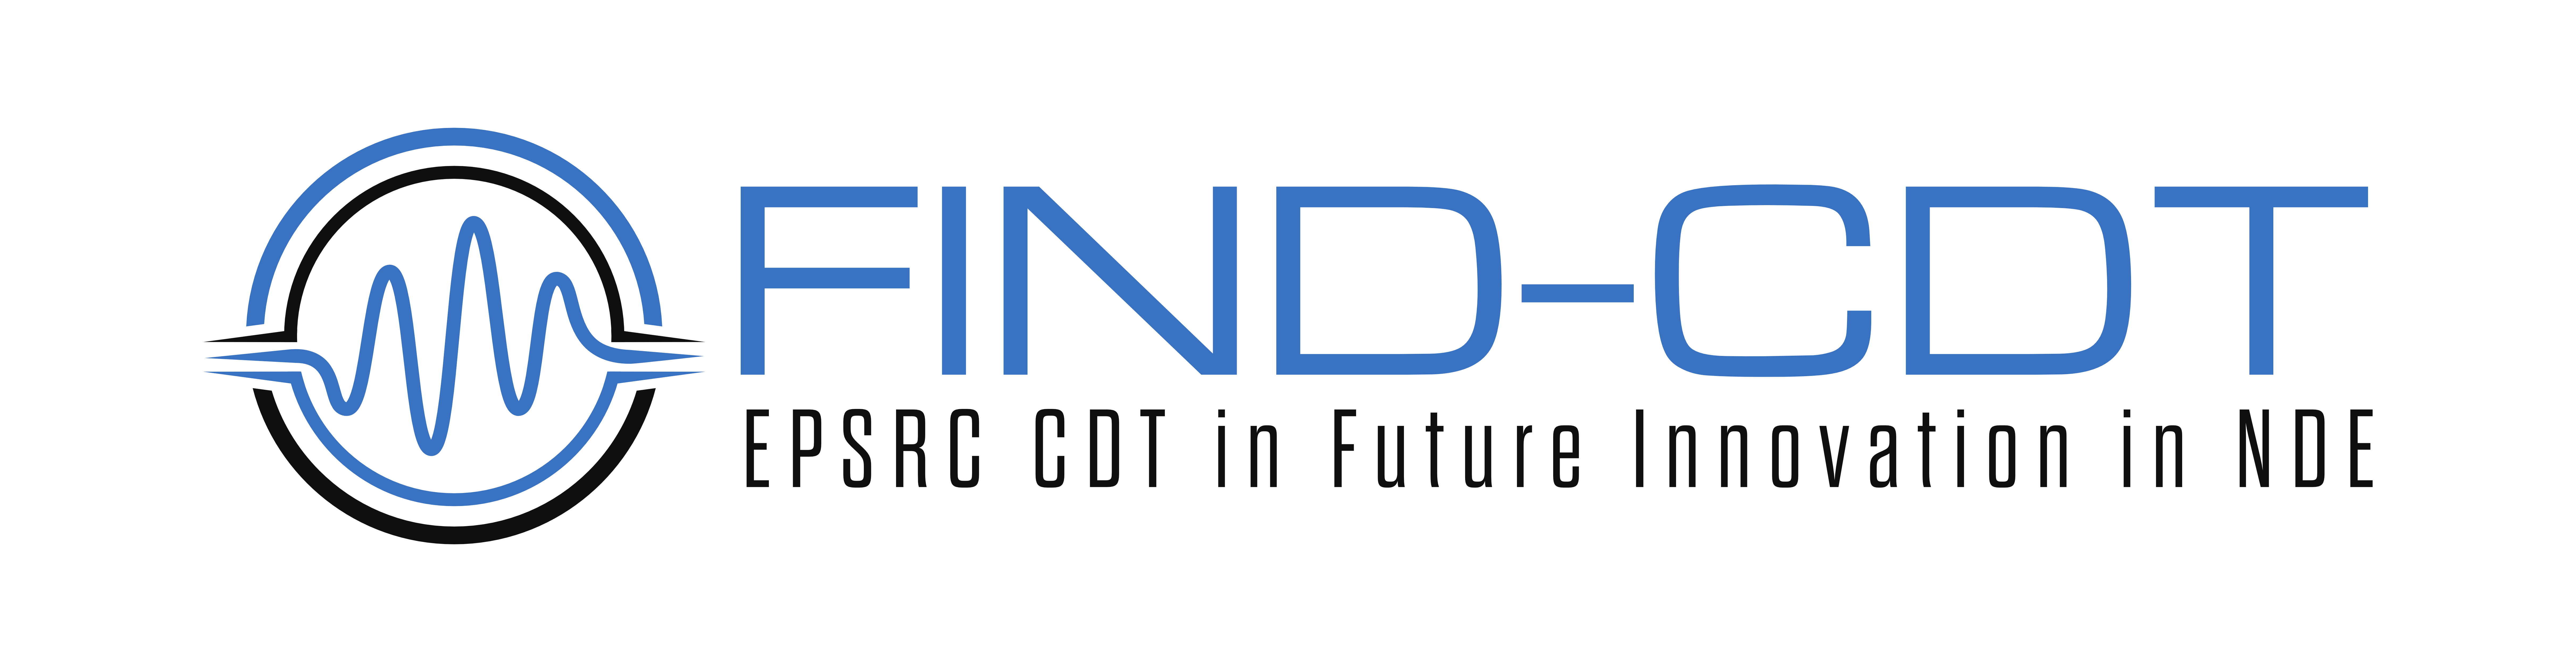 FIND-CDT